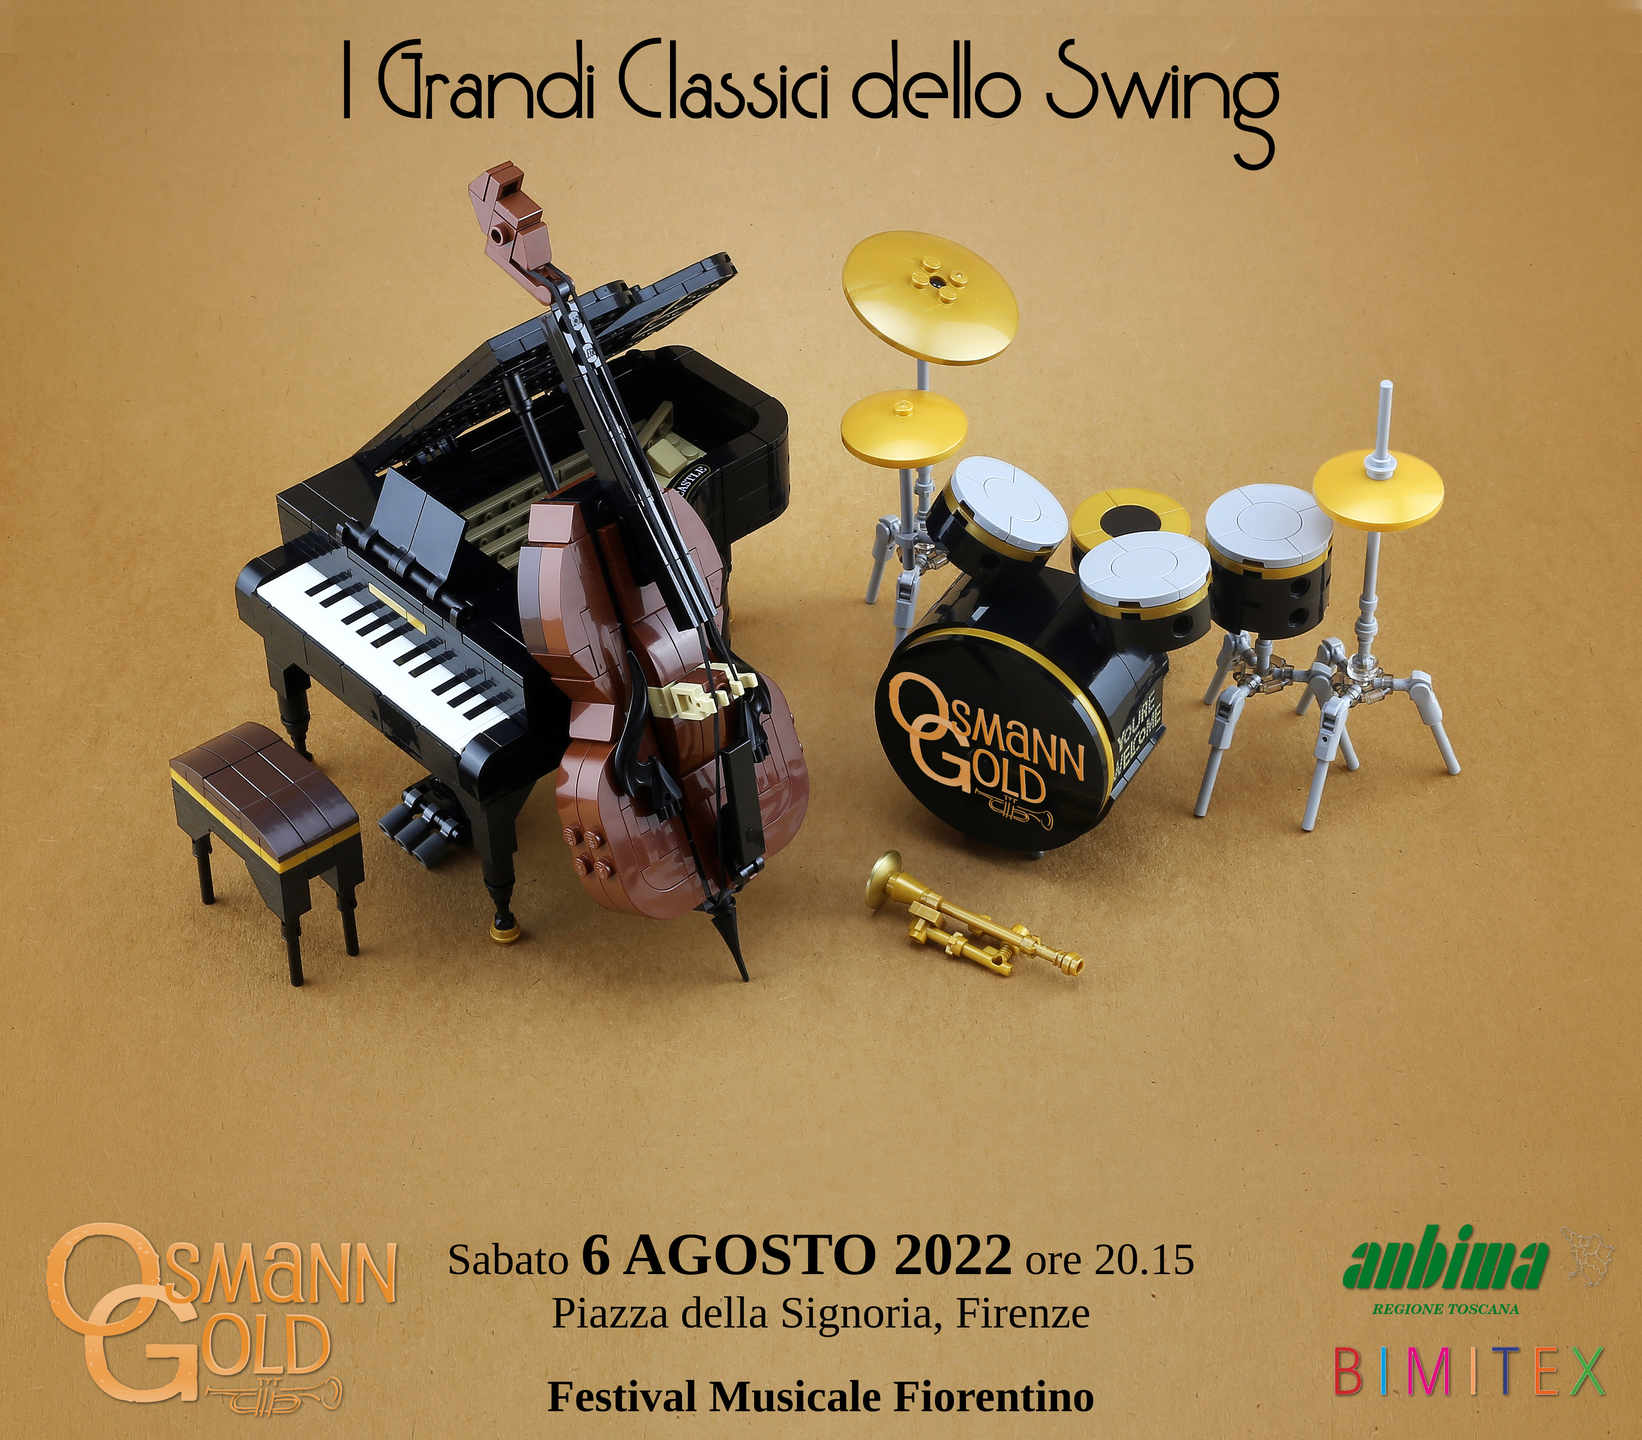 Locandina del concerto OsmannGold "I Grandi Classici dello Swing" a Firenze